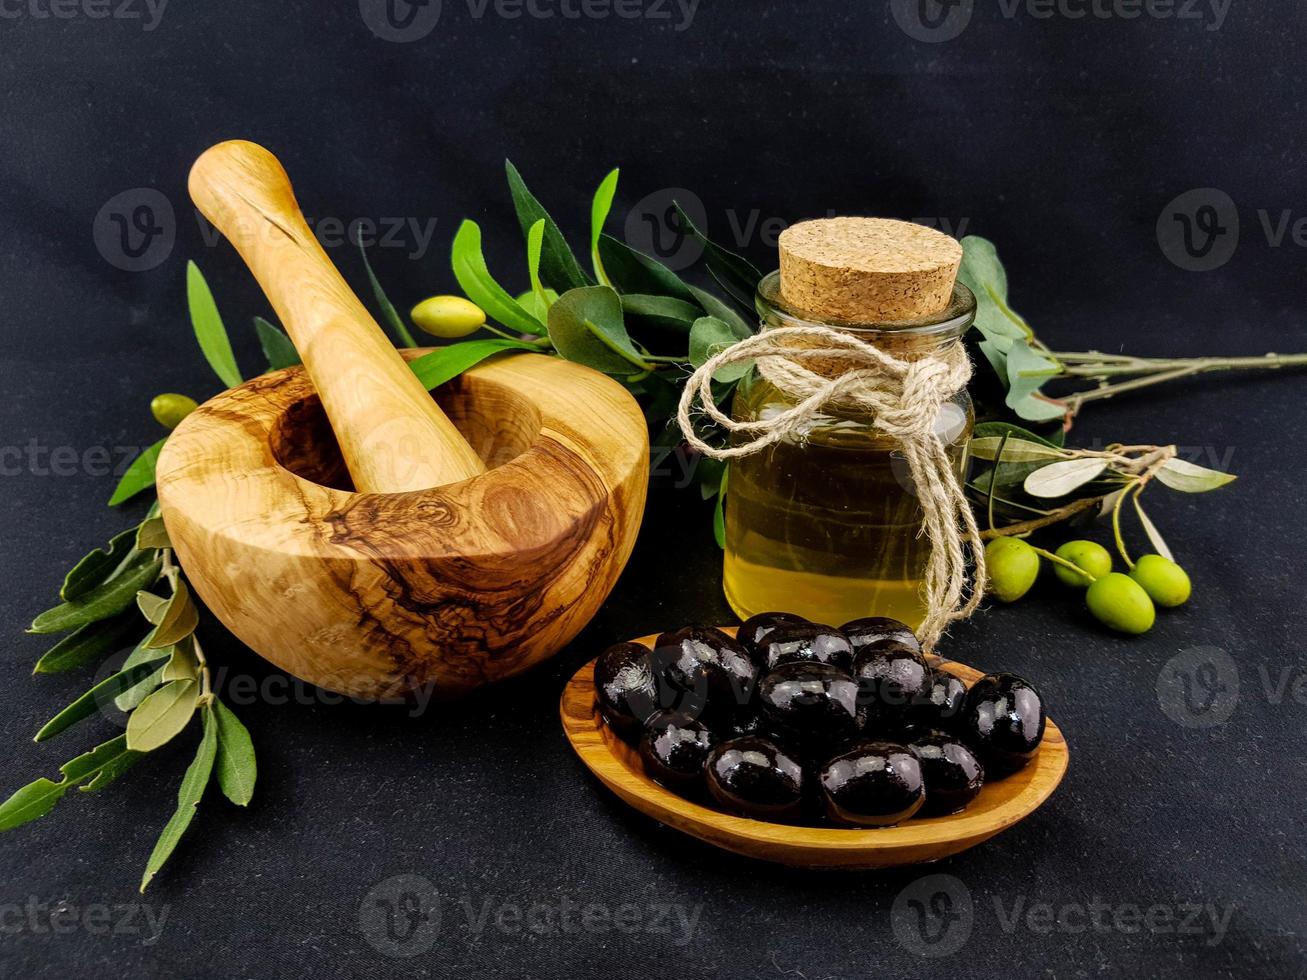 azeite de oliva prensado a frio com galho e frutas foto